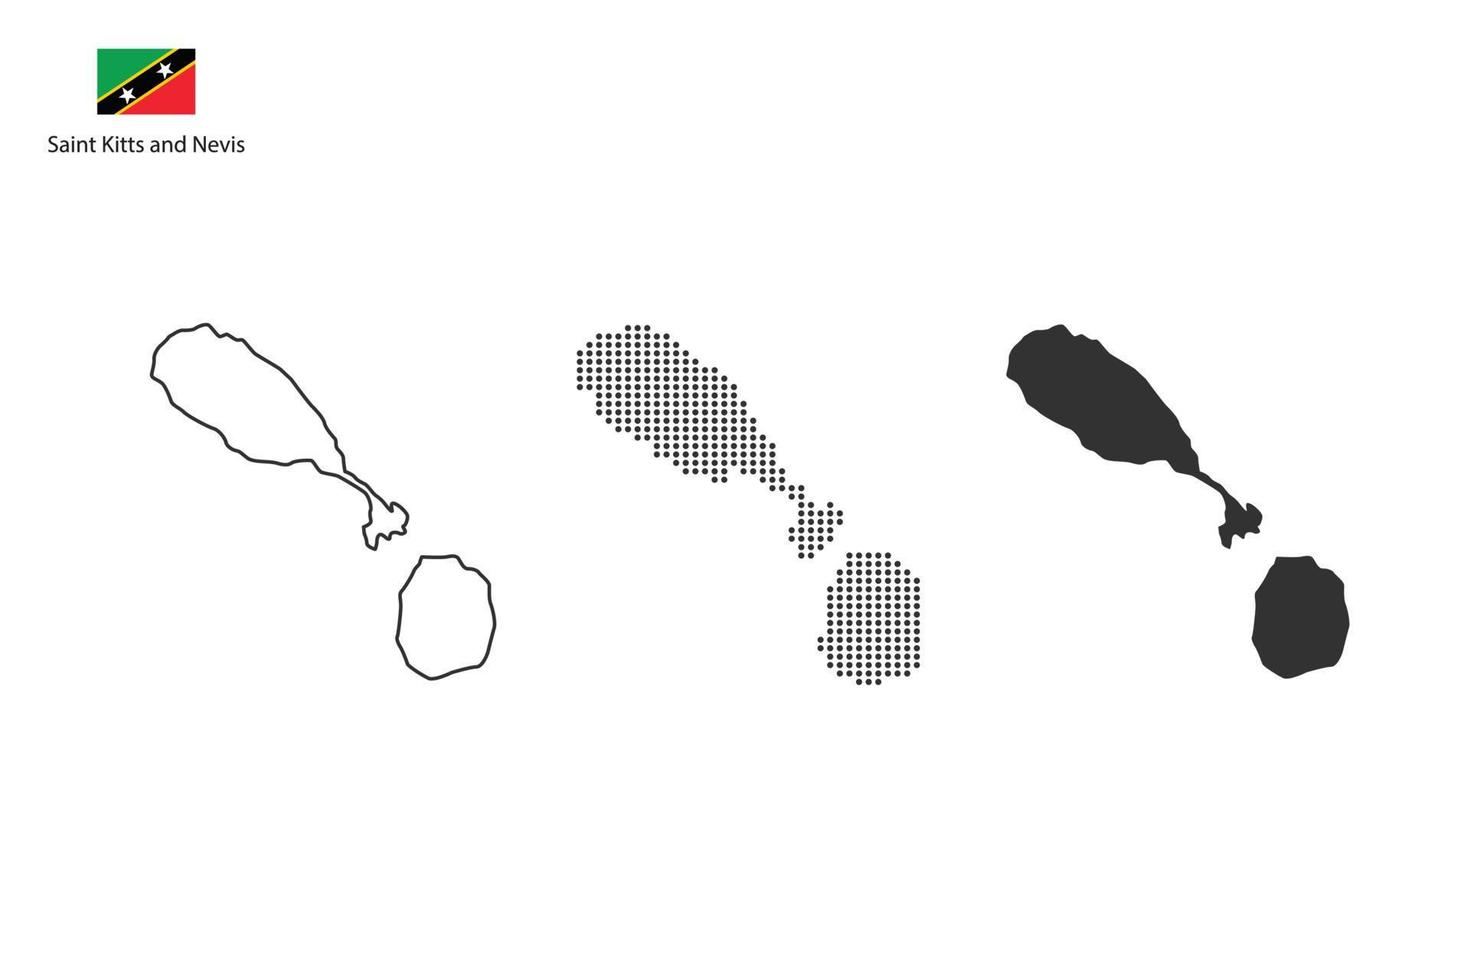 3 versiones del vector de la ciudad del mapa de Saint Kitts y Nevis por estilo de simplicidad de contorno negro delgado, estilo de punto negro y estilo de sombra oscura. todo en el fondo blanco.